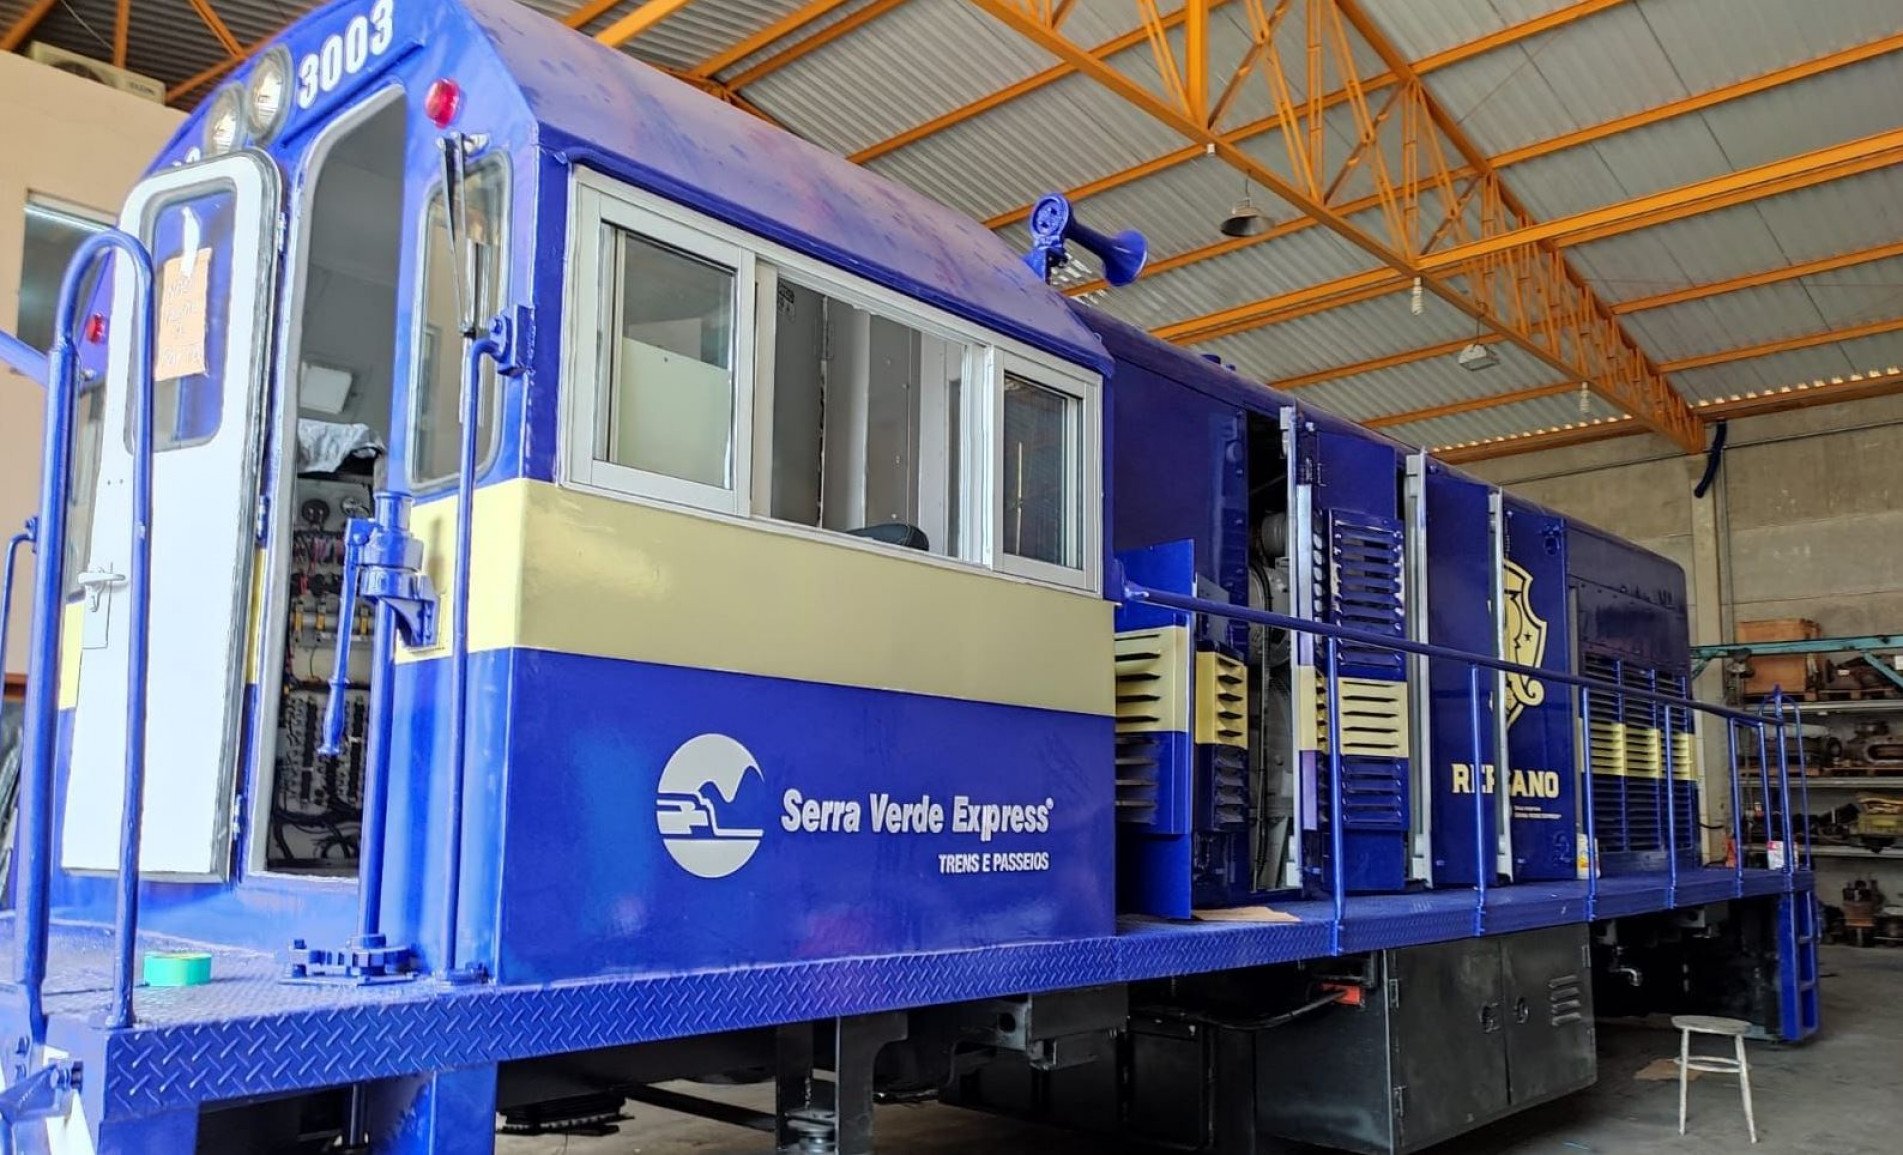 Trem Republicano é operado pela Serra Verde Express, concessionária dos trens turísticos na ferrovia Paranaguá-Curitiba (Crédito: DIVULGAÇÃO)